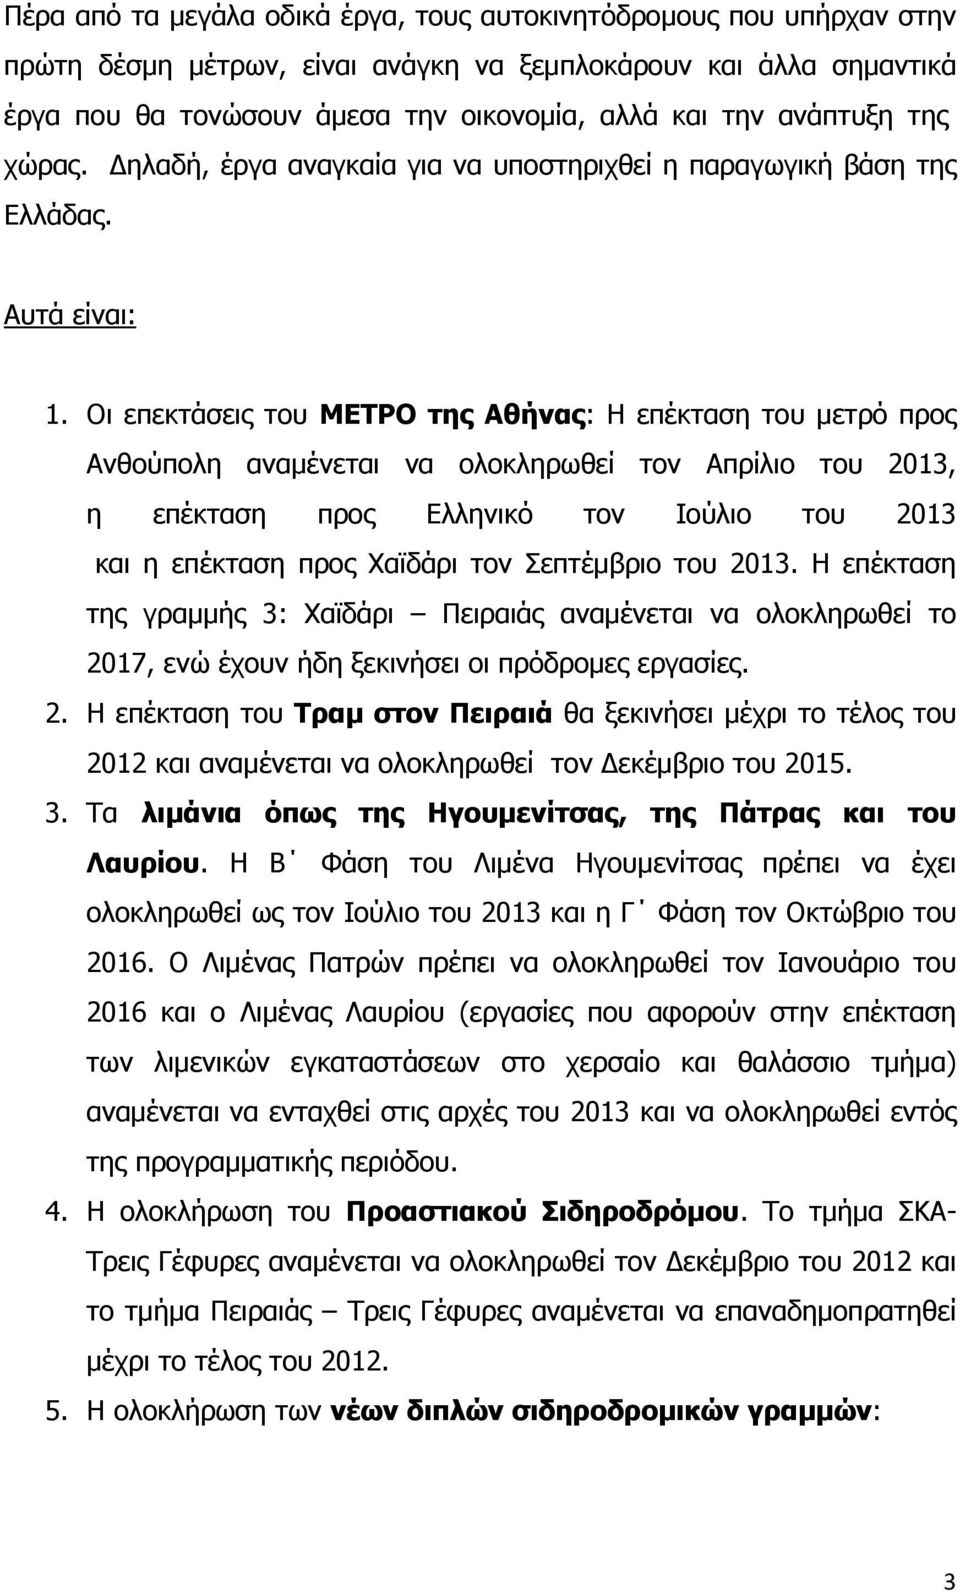 Οι επεκτάσεις του ΜΕΤΡΟ της Αθήνας: Η επέκταση του μετρό προς Ανθούπολη αναμένεται να ολοκληρωθεί τον Απρίλιο του 2013, η επέκταση προς Ελληνικό τον Ιούλιο του 2013 και η επέκταση προς Χαϊδάρι τον